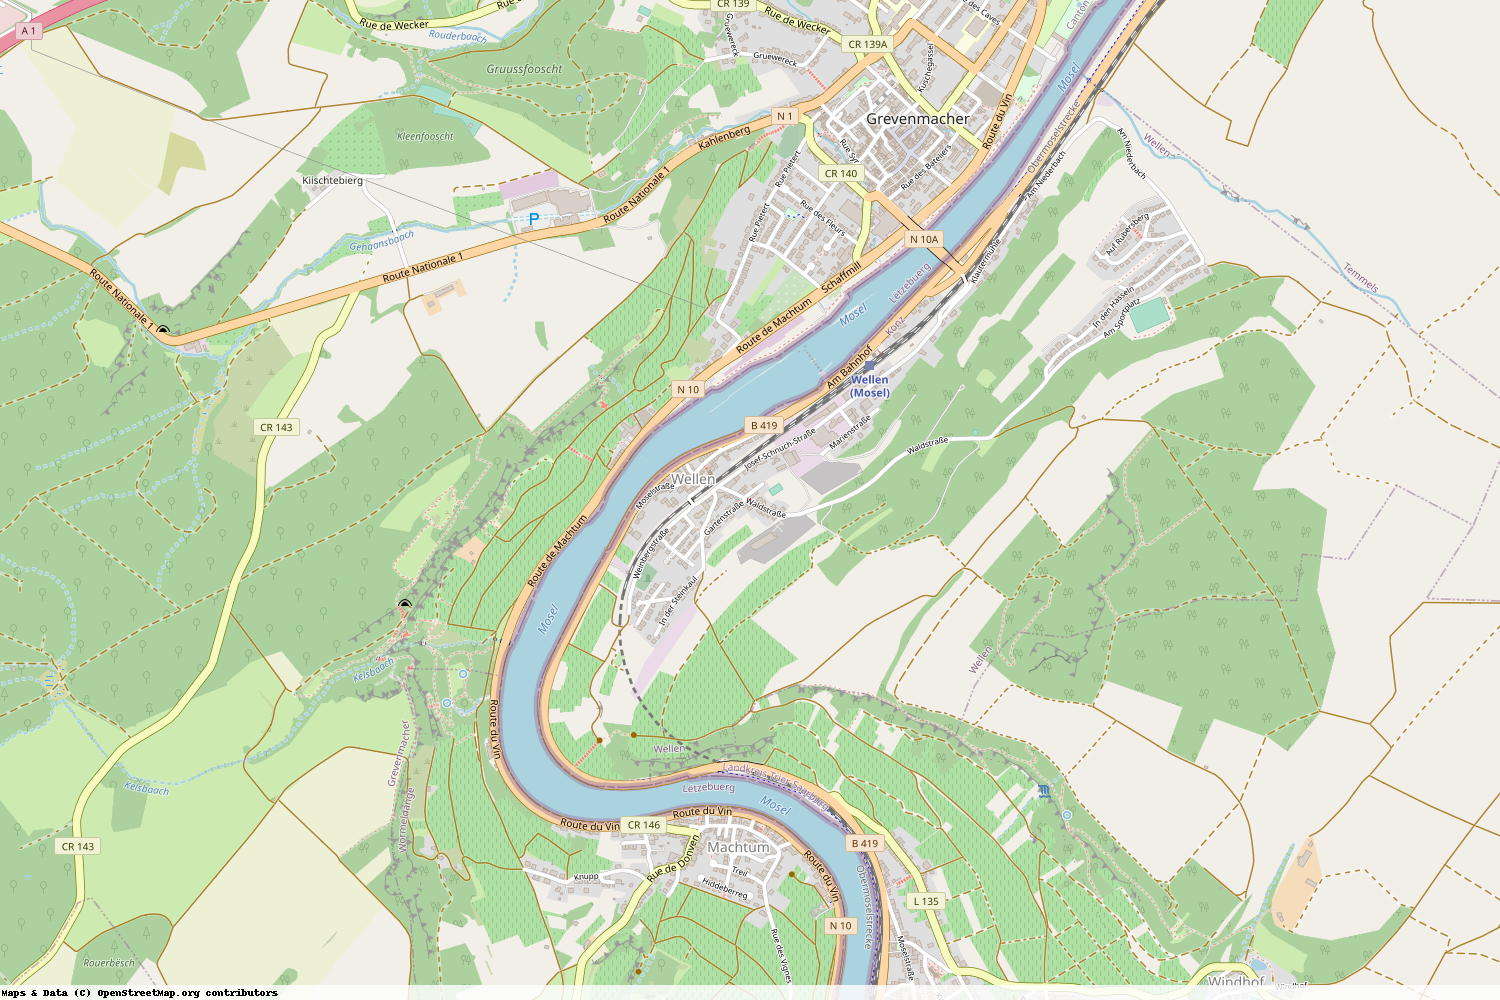 Ist gerade Stromausfall in Rheinland-Pfalz - Trier-Saarburg - Wellen?